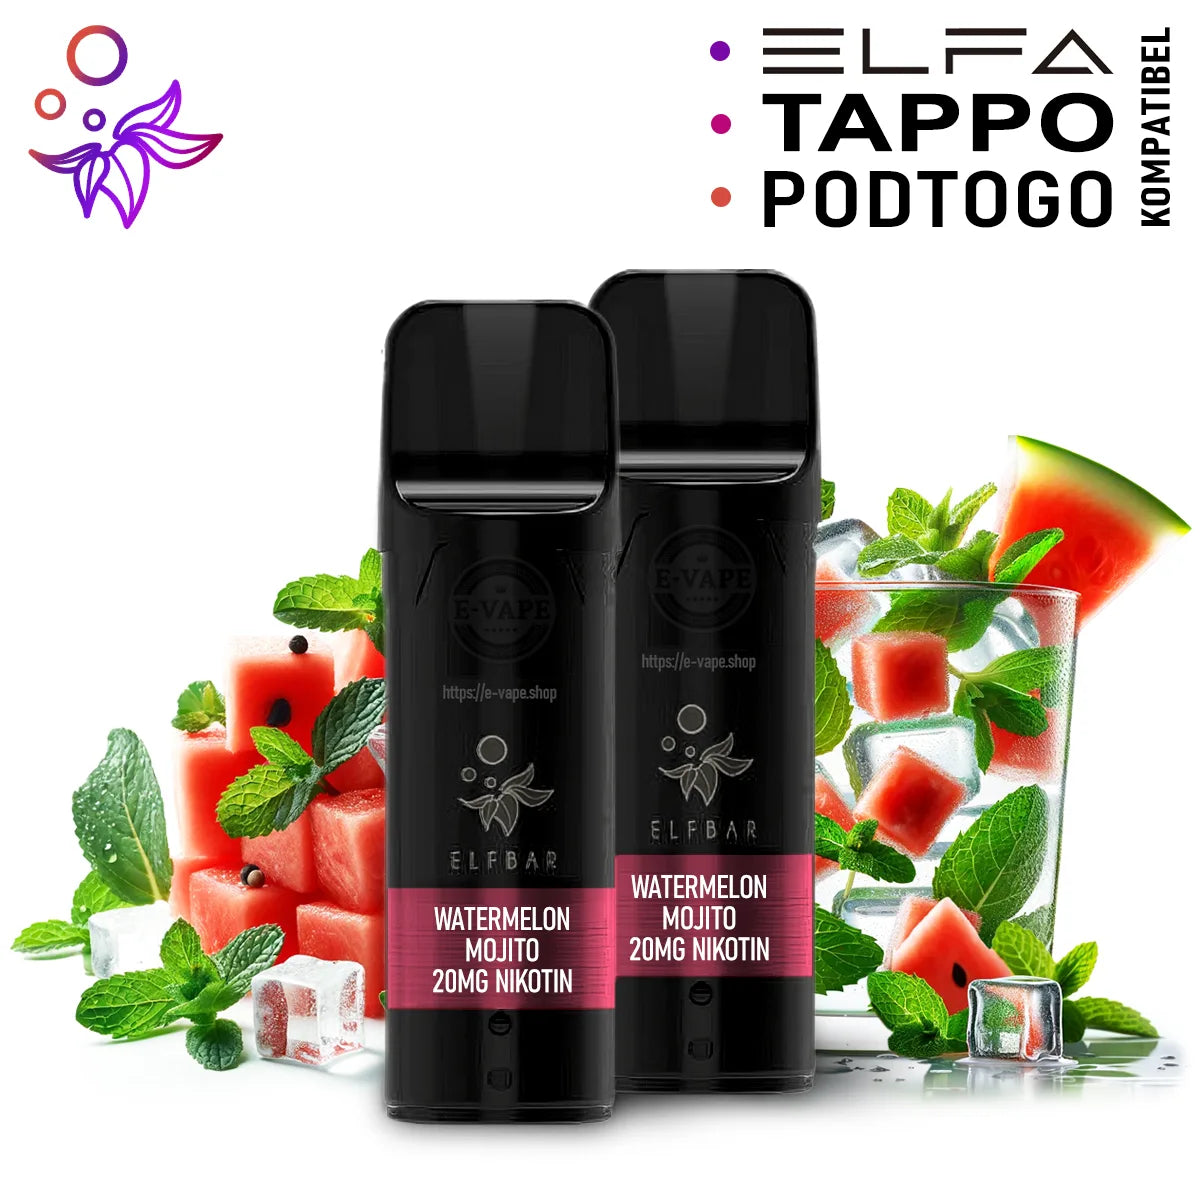 Elfbar Pods 2x Watermelon Mojito 20mg ELFA / Tappo / PodToGo